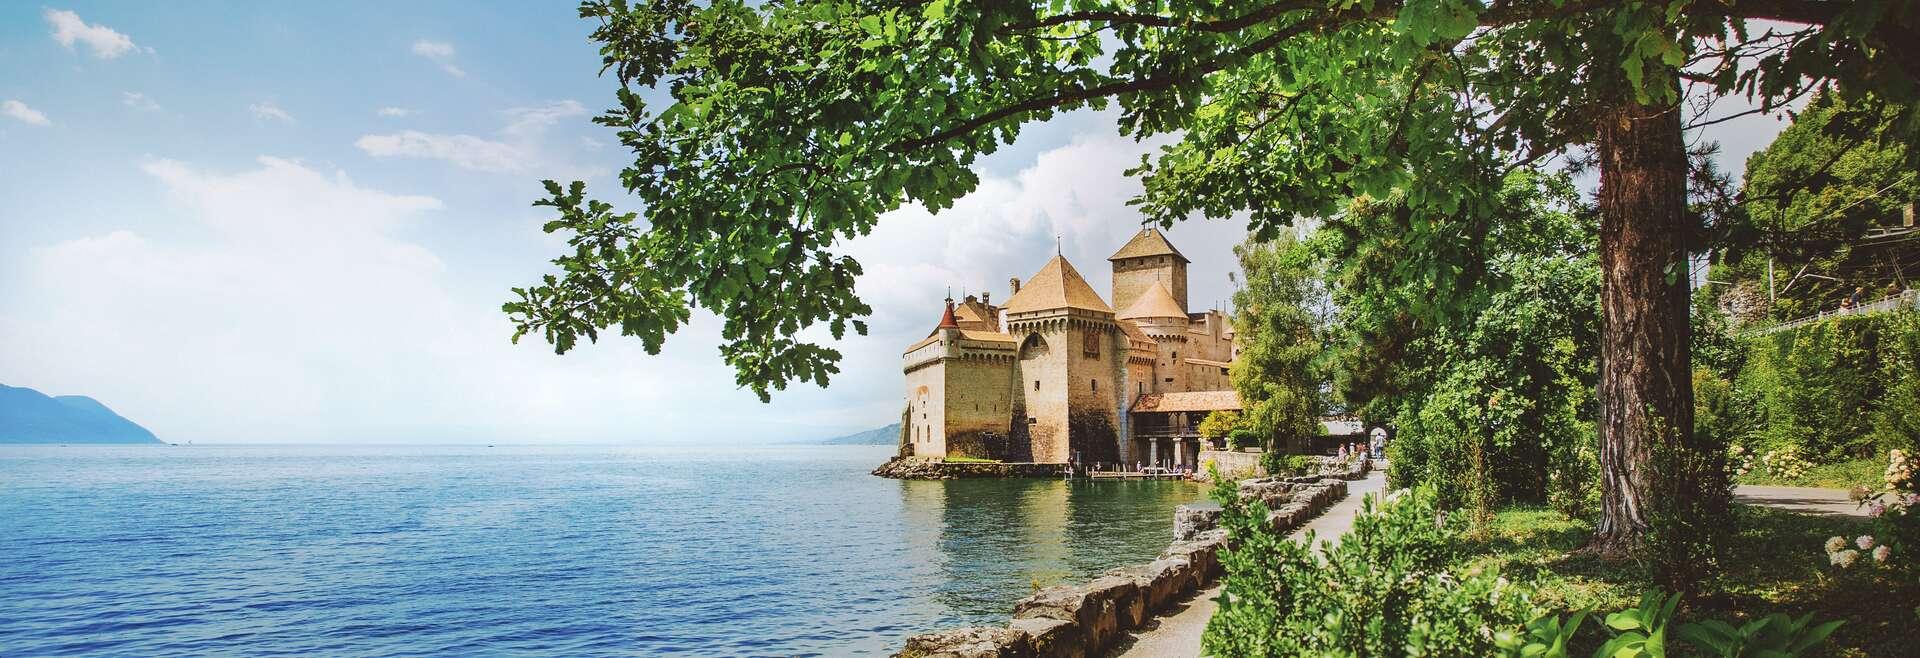 Séjour linguistique Suisse, Montreux - château Chillon